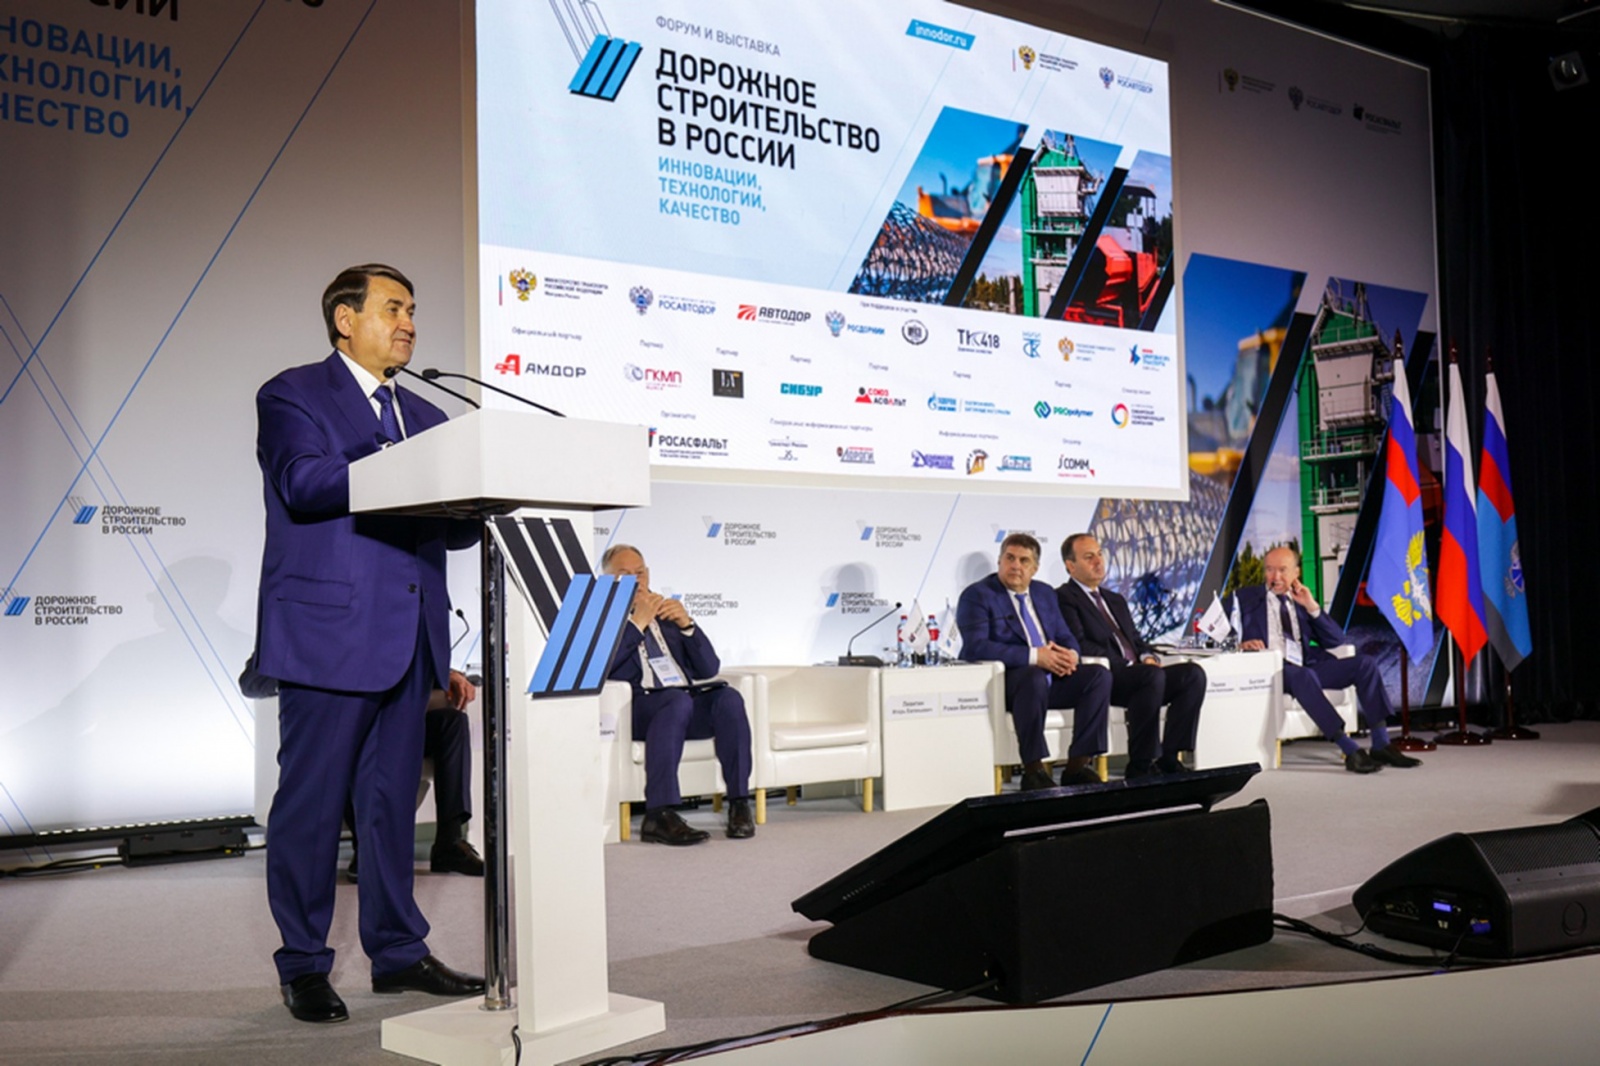 На форуме «Дорожное строительство в России» обсудили развитие цифровых технологий в дорожном хозяйстве, кадровый потенциал, инновации и внедрение новых материалов и технологий.